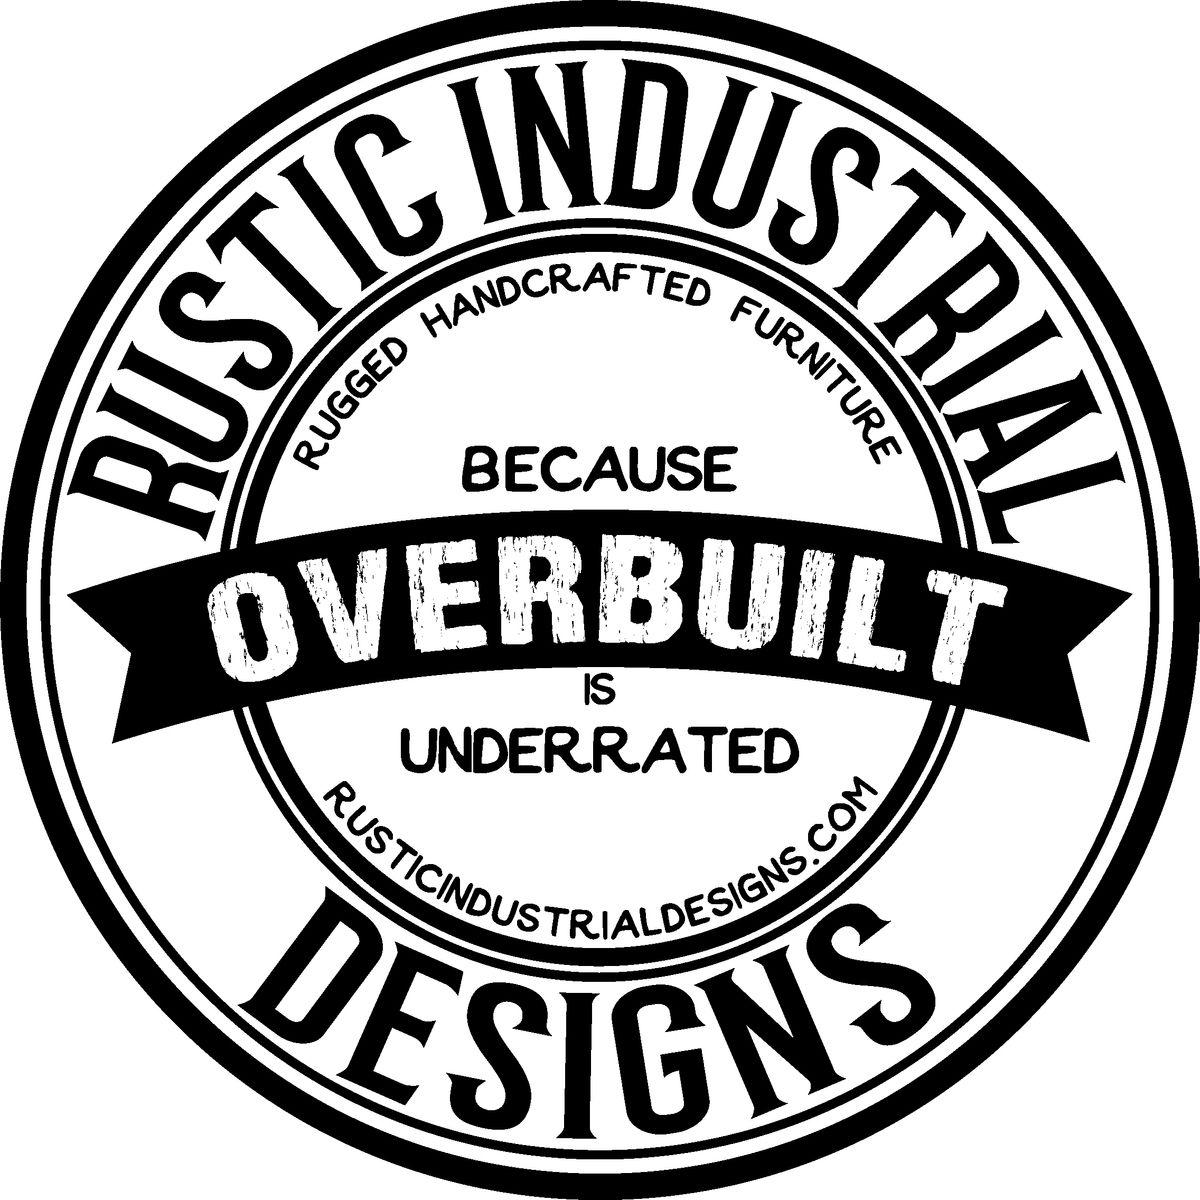 Rustic Industrial Logo - Rustic Industrial Designs - Blackwell Gallery